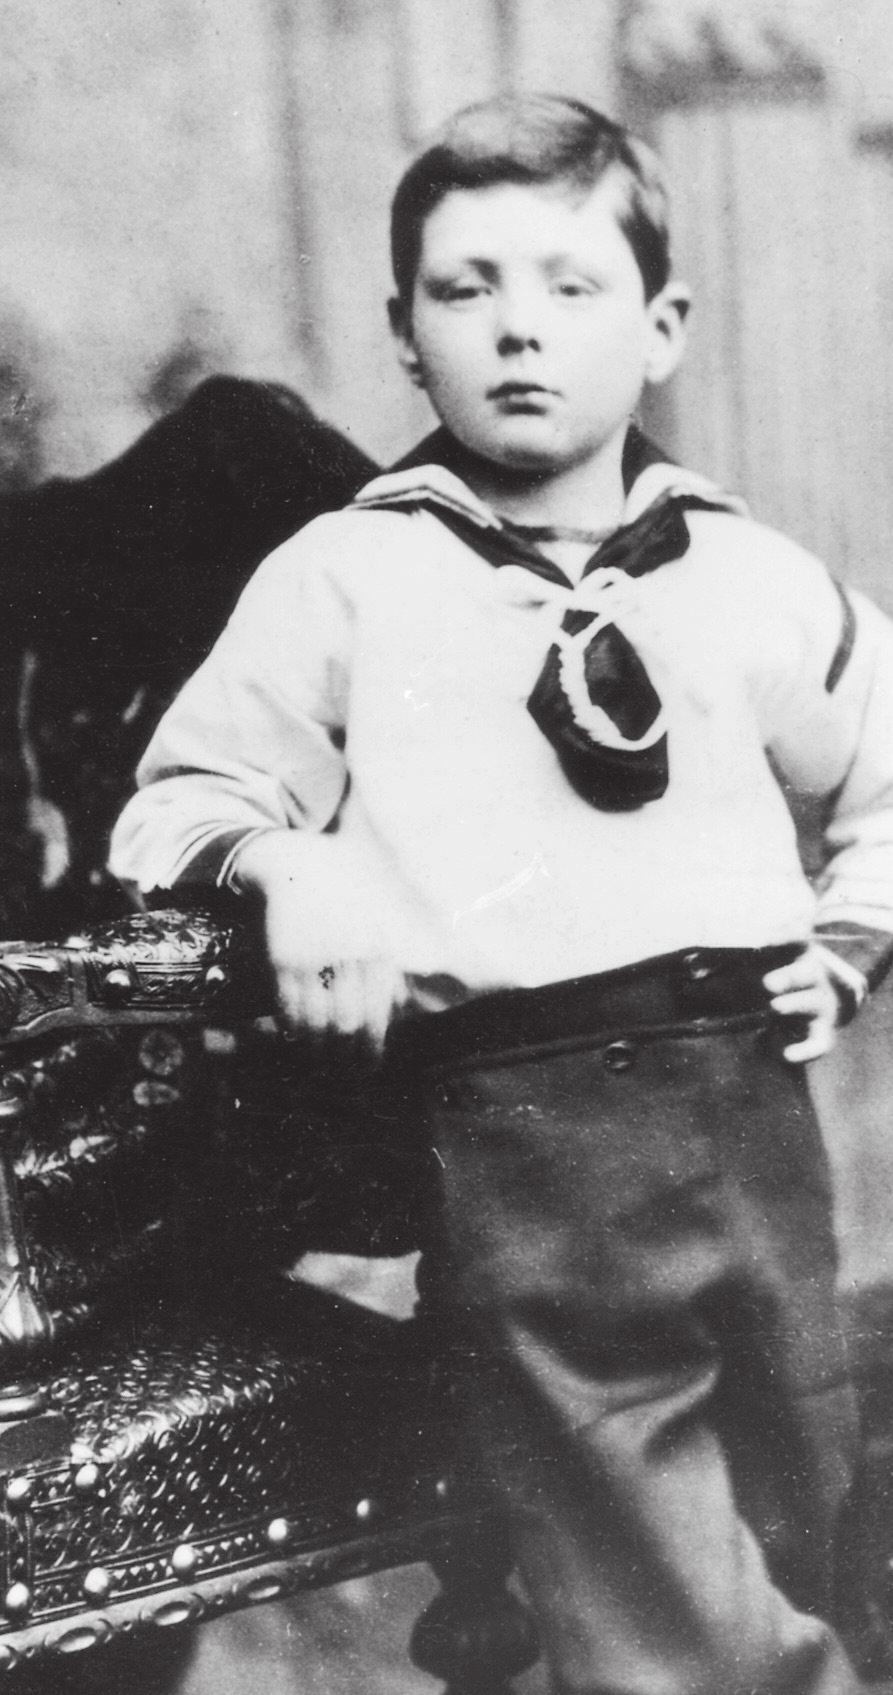 Winston op zevenjarige leeftijd, in een matrozenpakje.